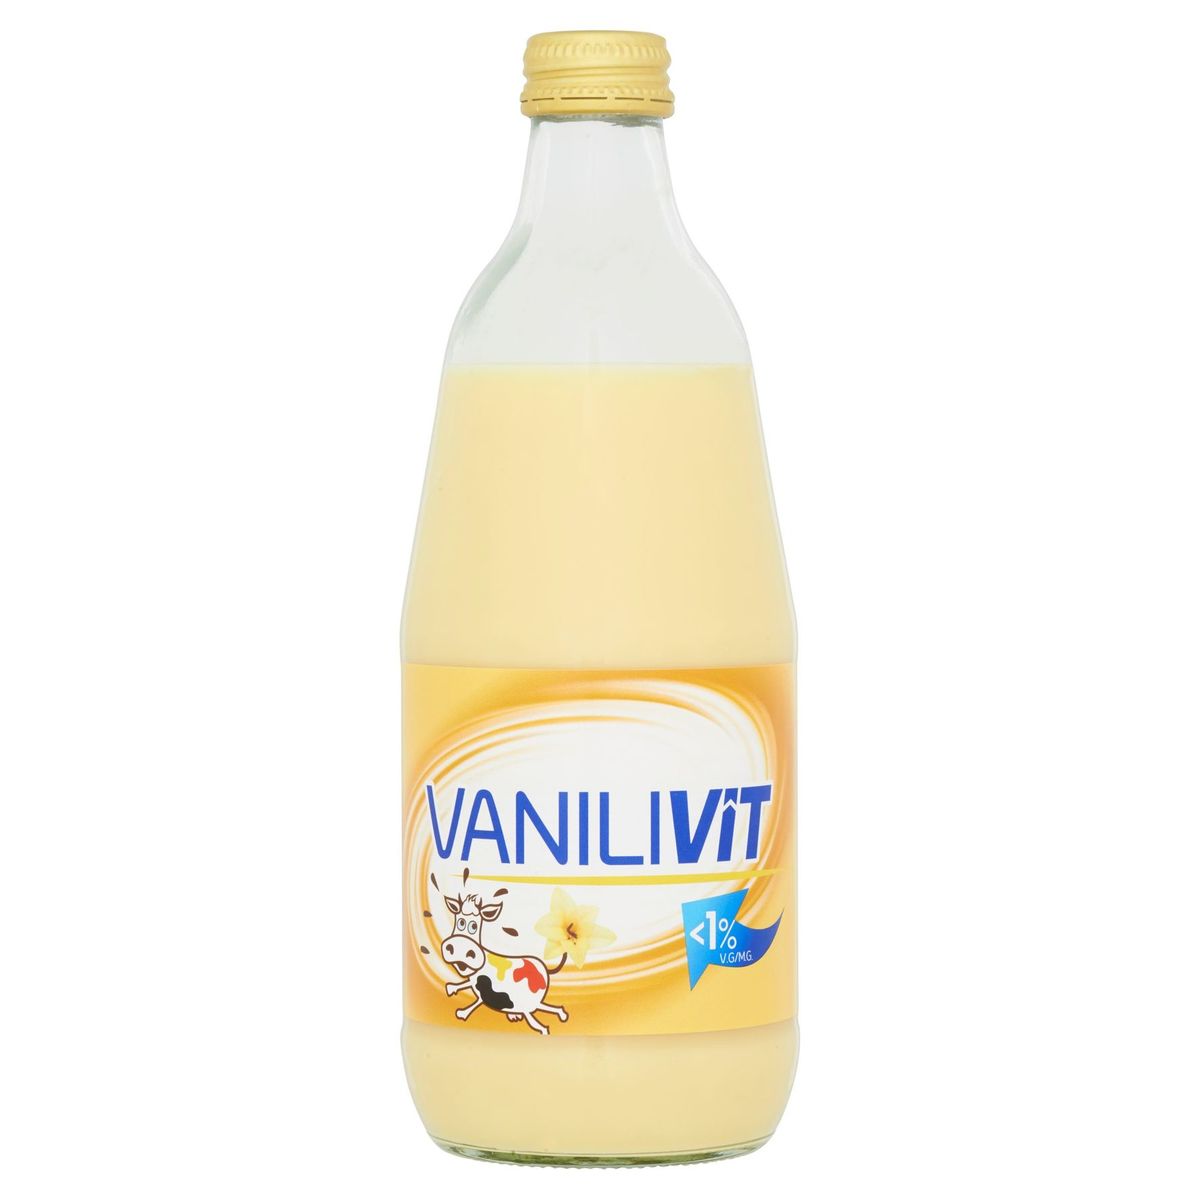 VaniliVit 0.5 L